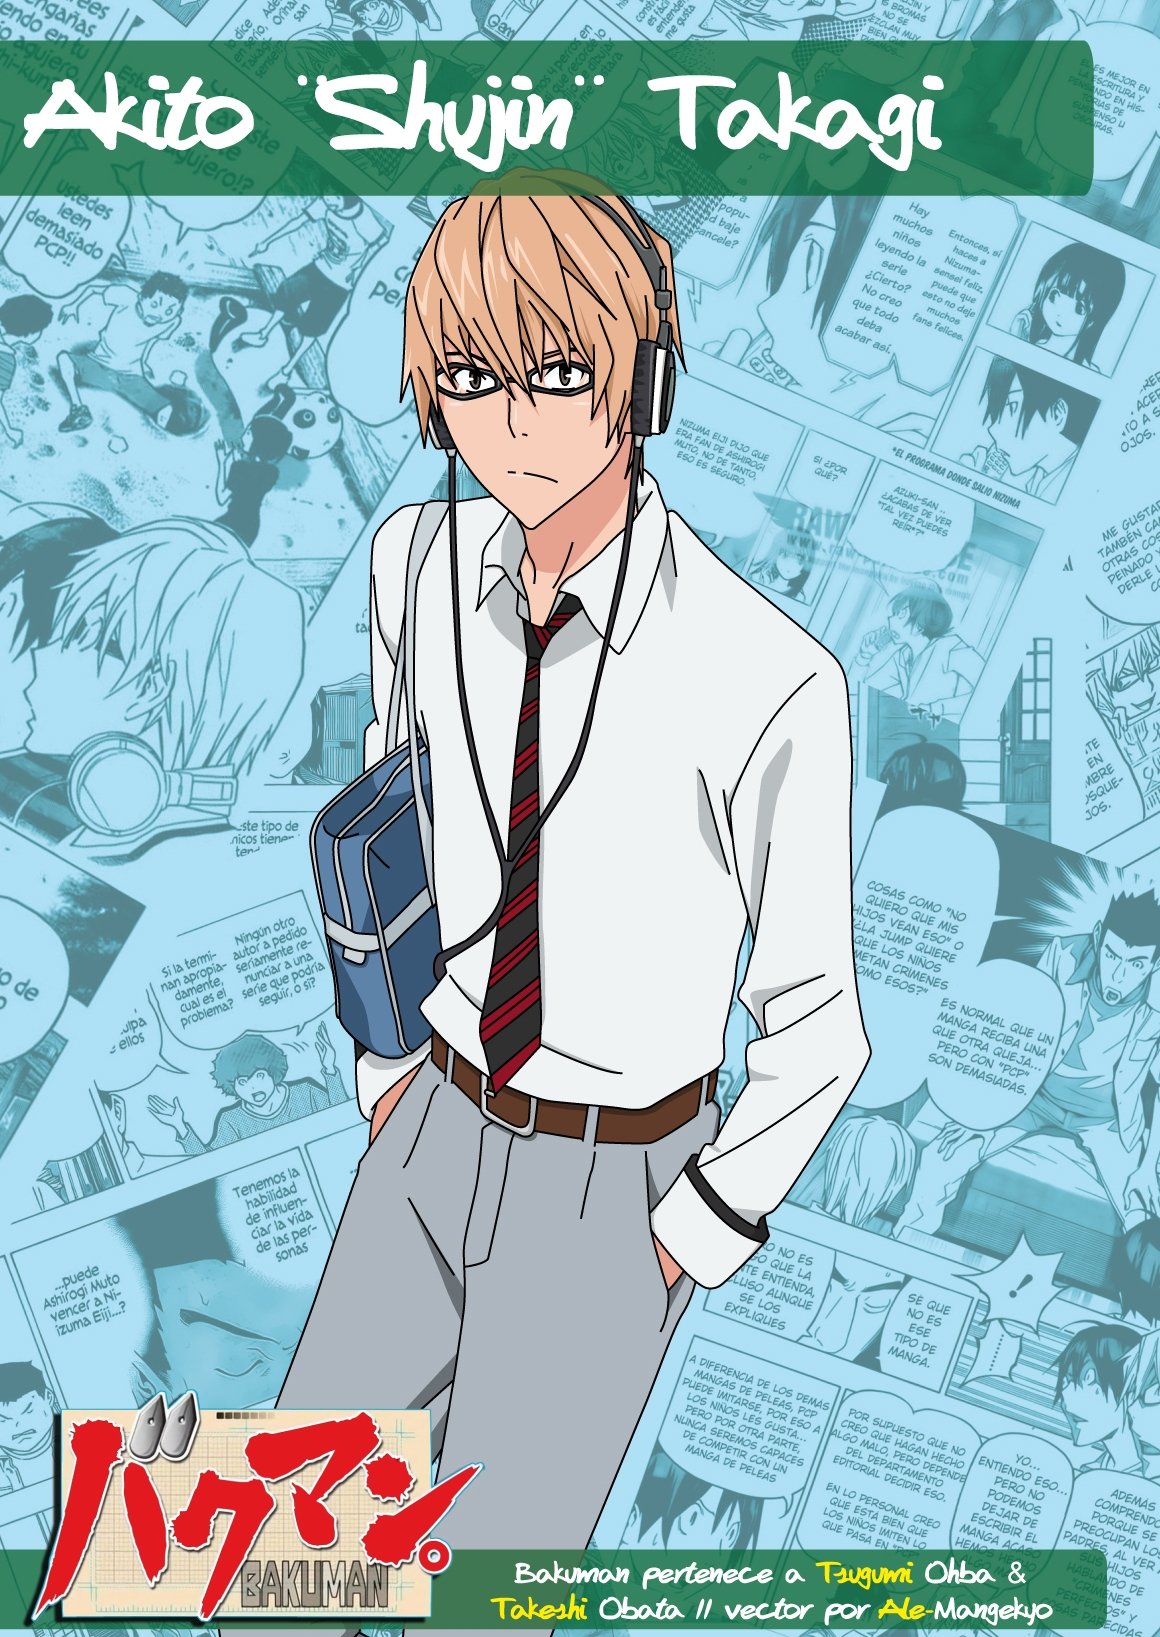 Takagi Akito。 Anime Image Board